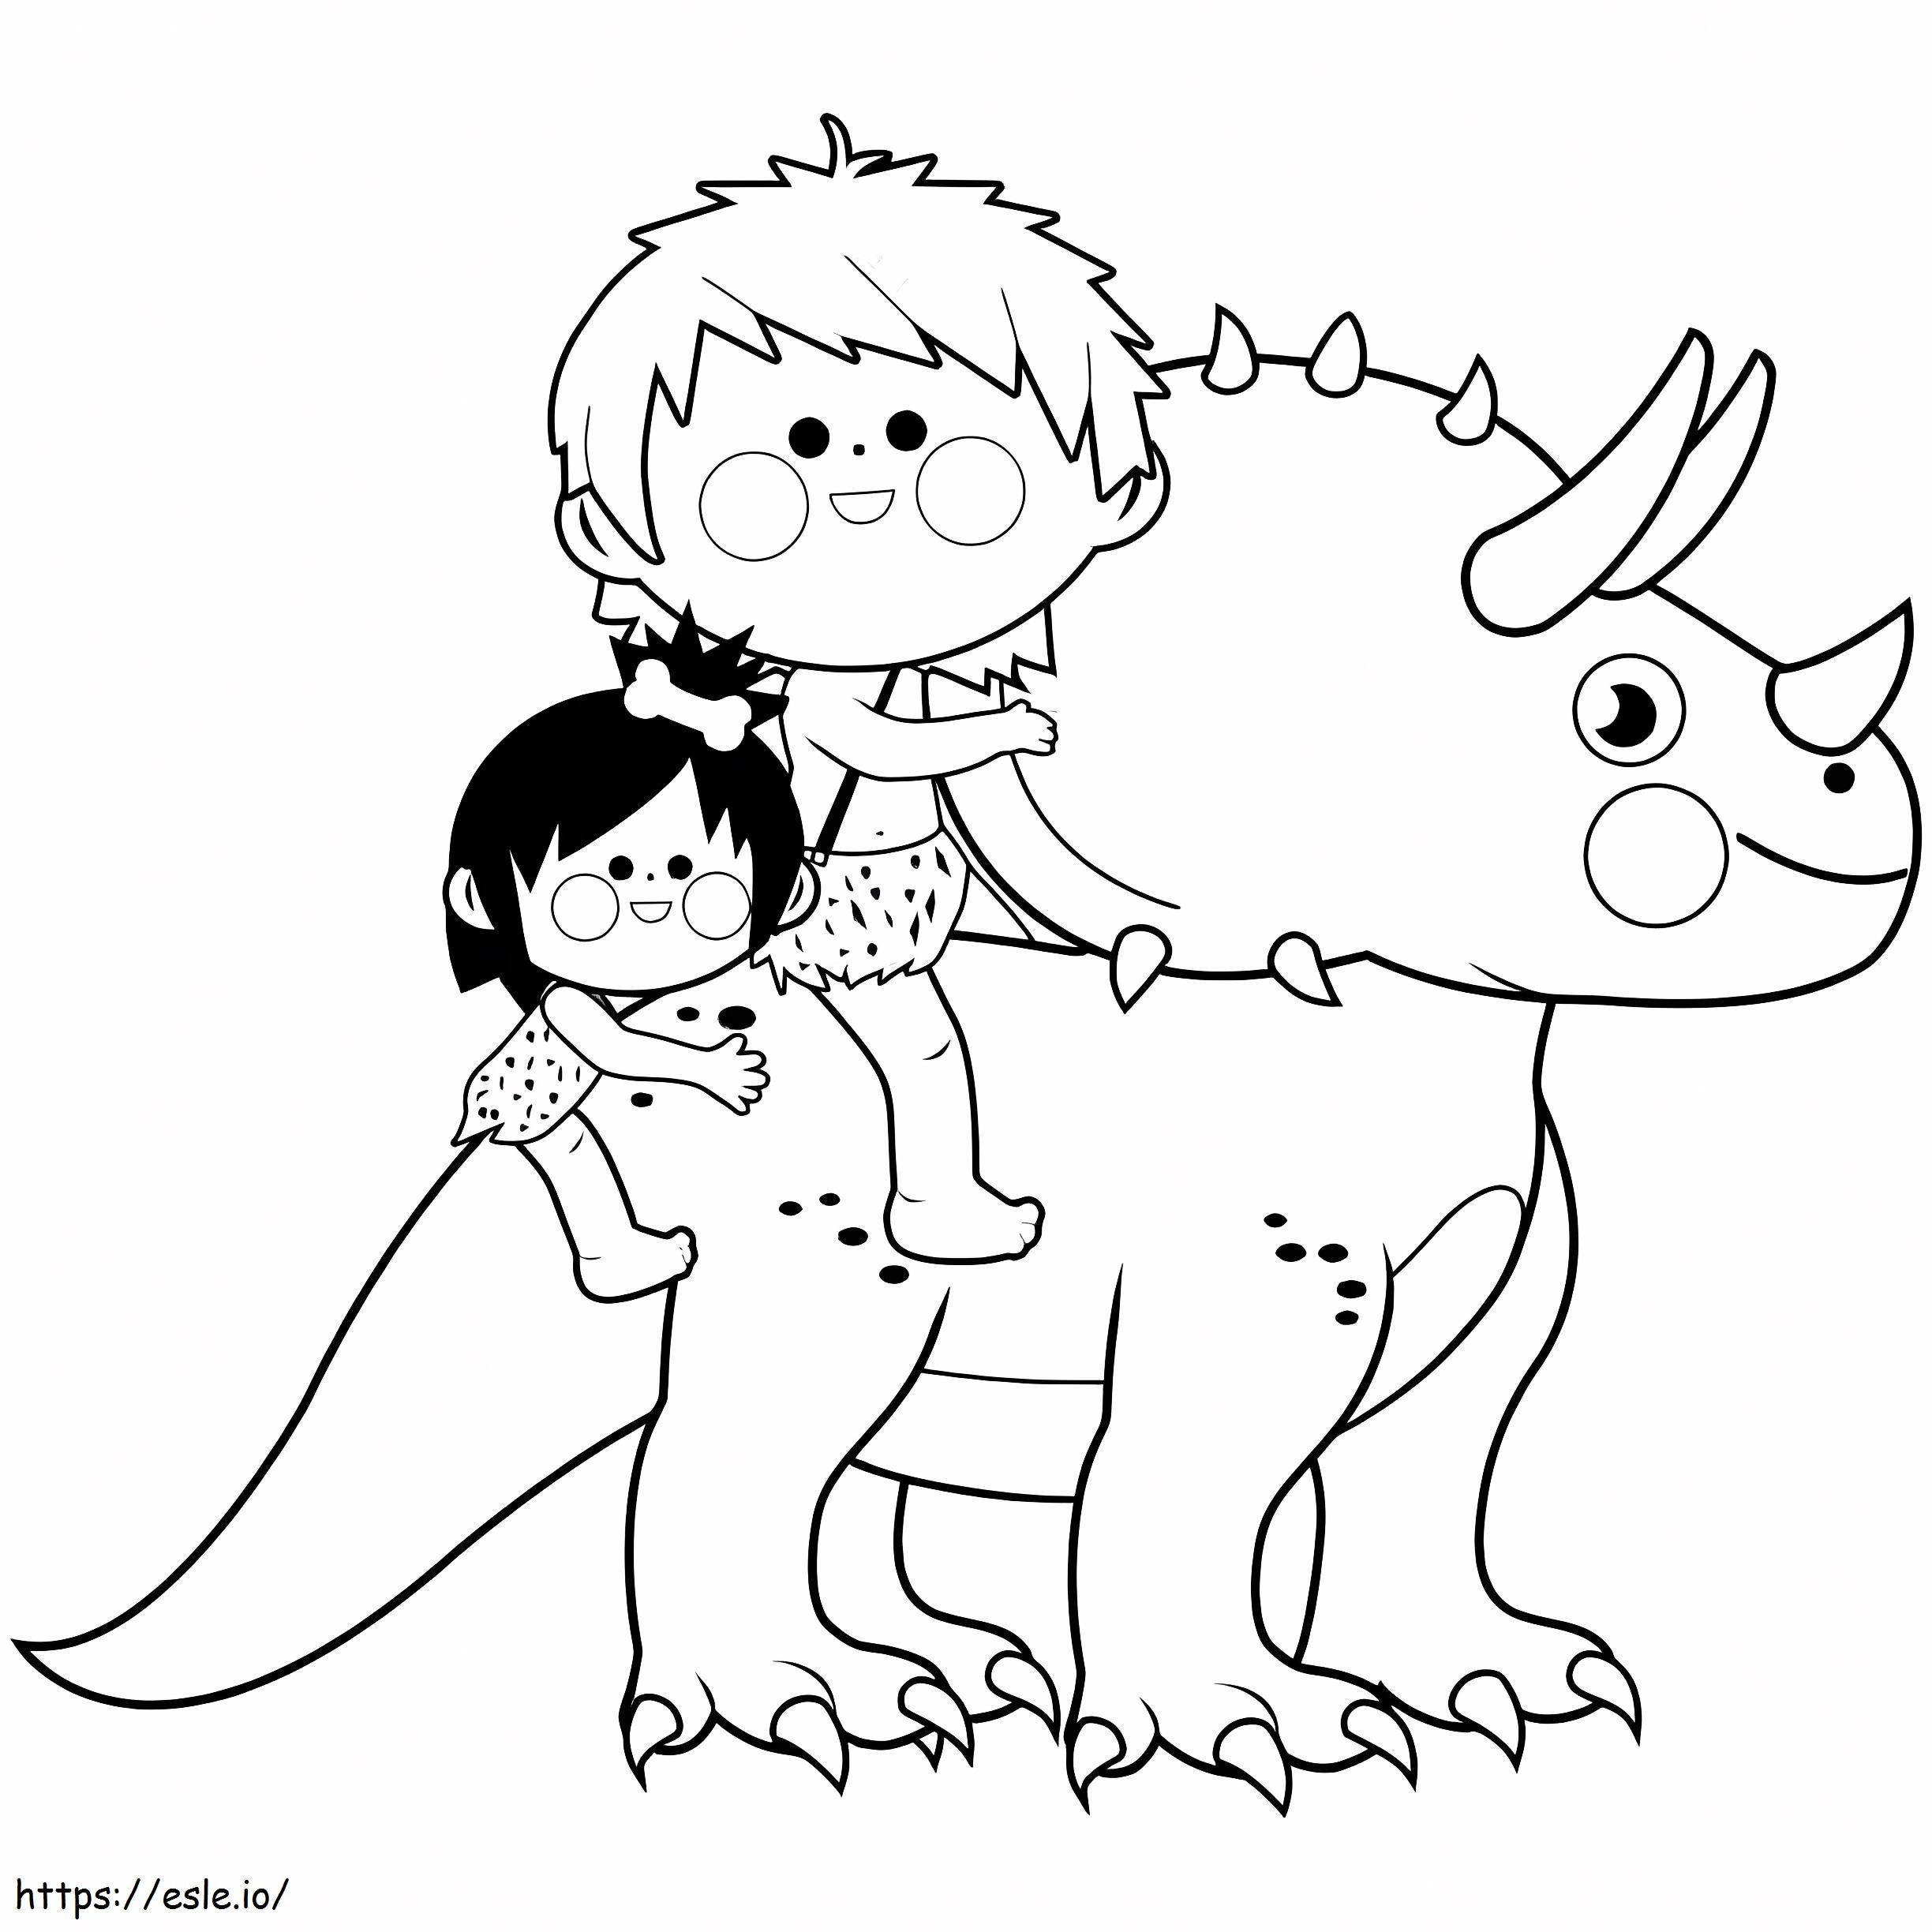 Dwoje dzieci jaskiniowców jadących na Triceratopsie kolorowanka